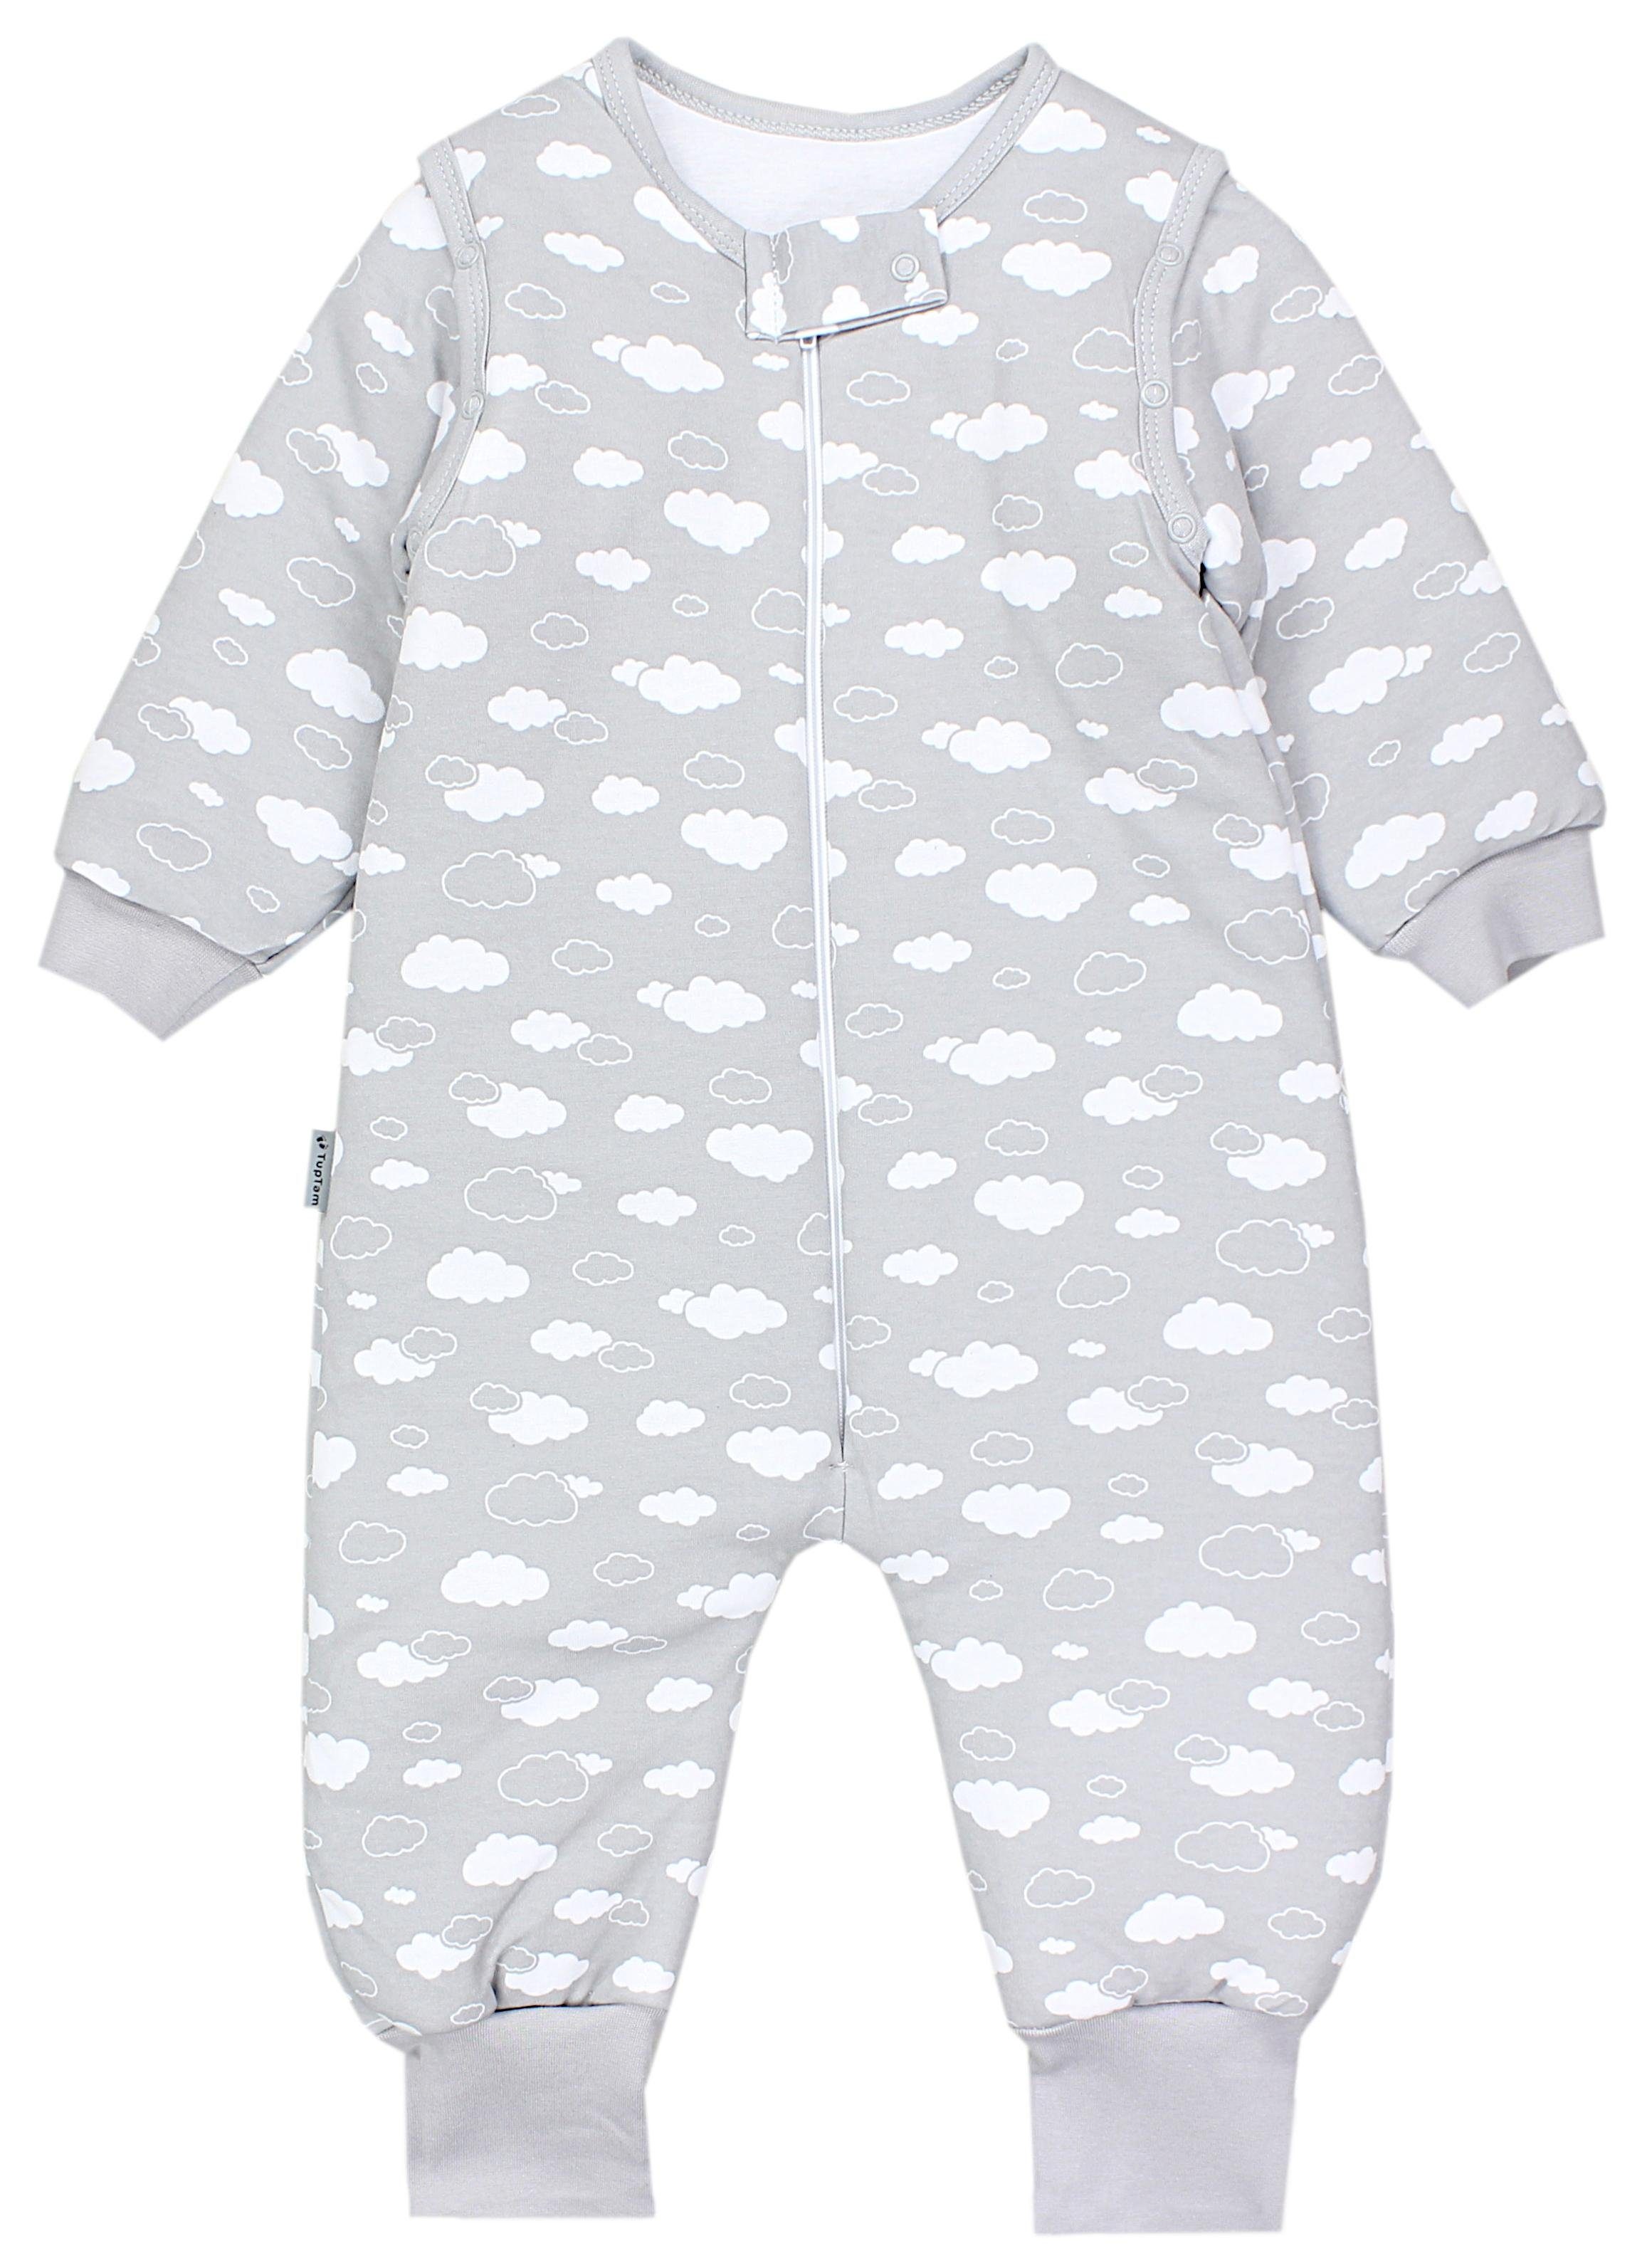 TupTam Babyschlafsack mit Beinen und Ärmel Winter OEKO-TEX zertifiziert Unisex Wolken Grau